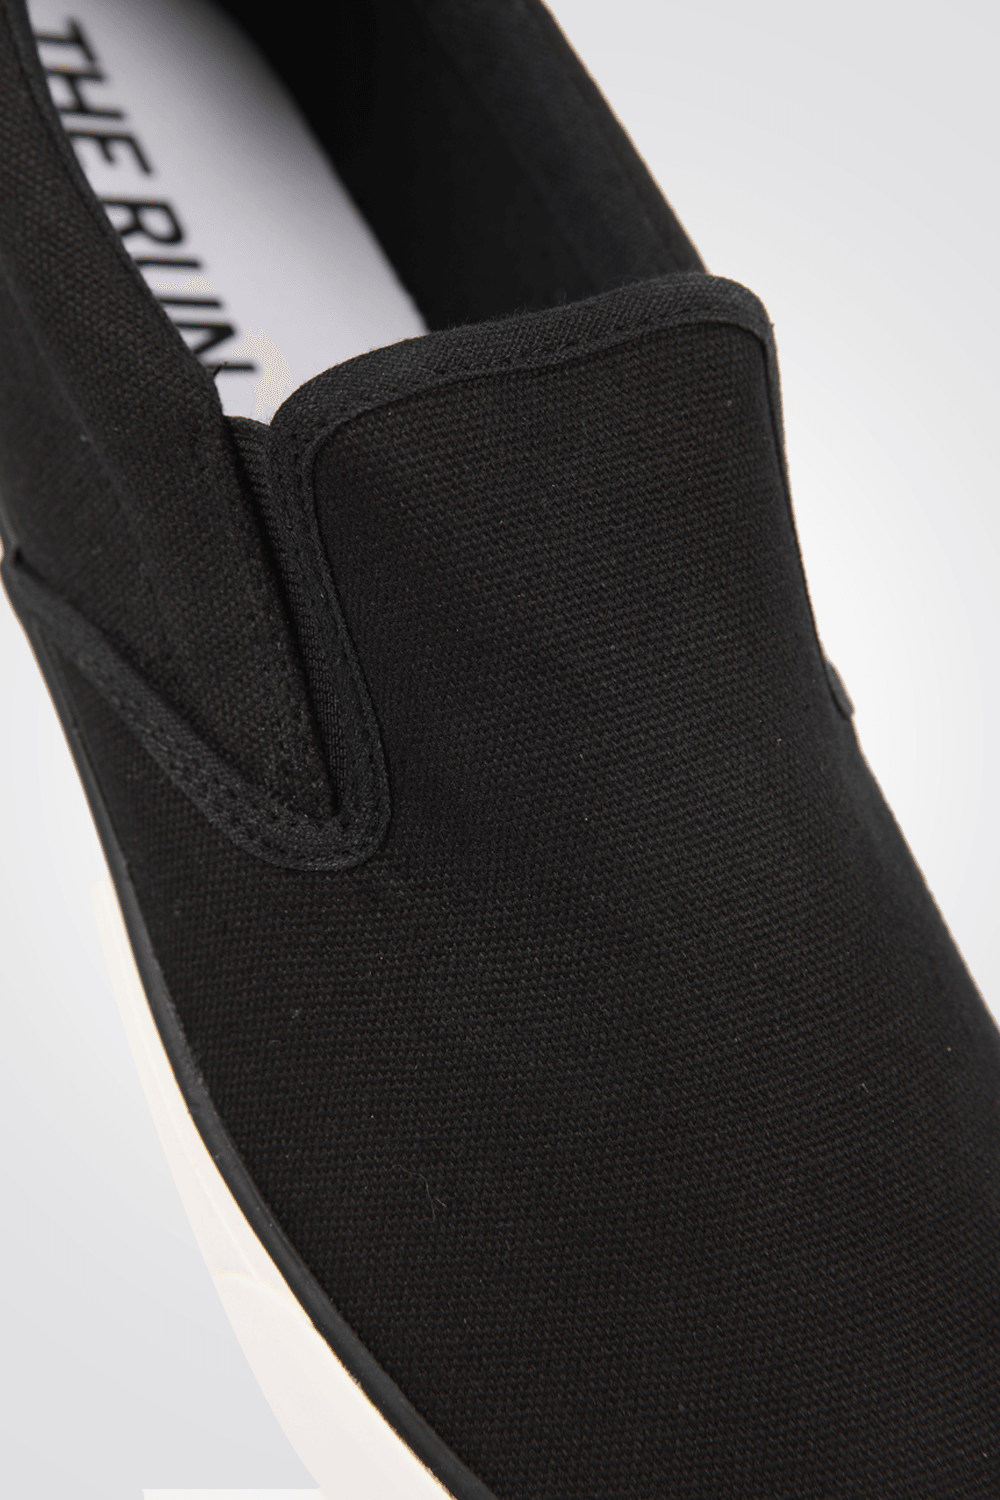 סניקרס לגבר KAM RUNS SLIP ON בצבע שחור - MASHBIR//365